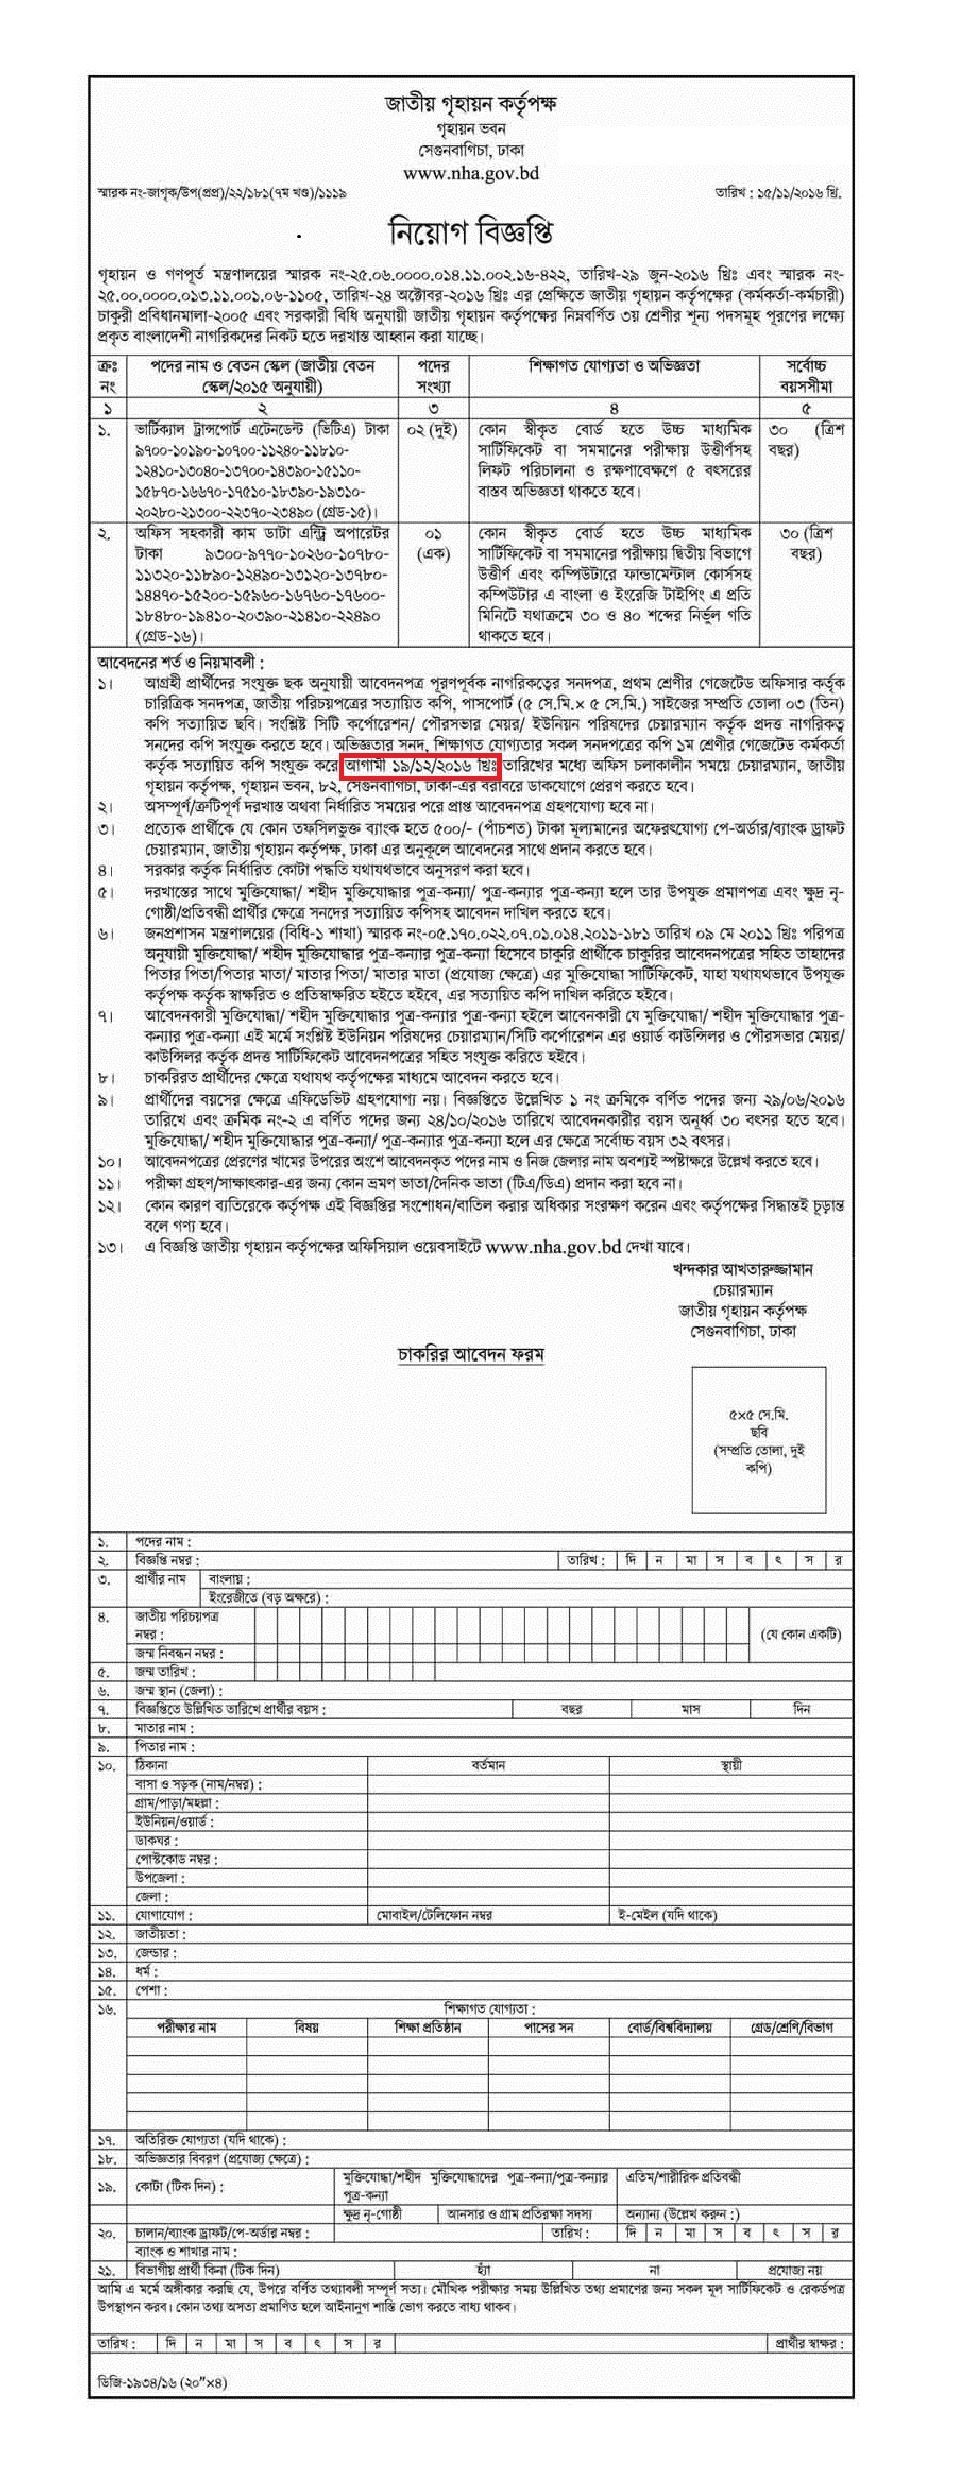 Bangladesh National Housing Authority Job Circular 